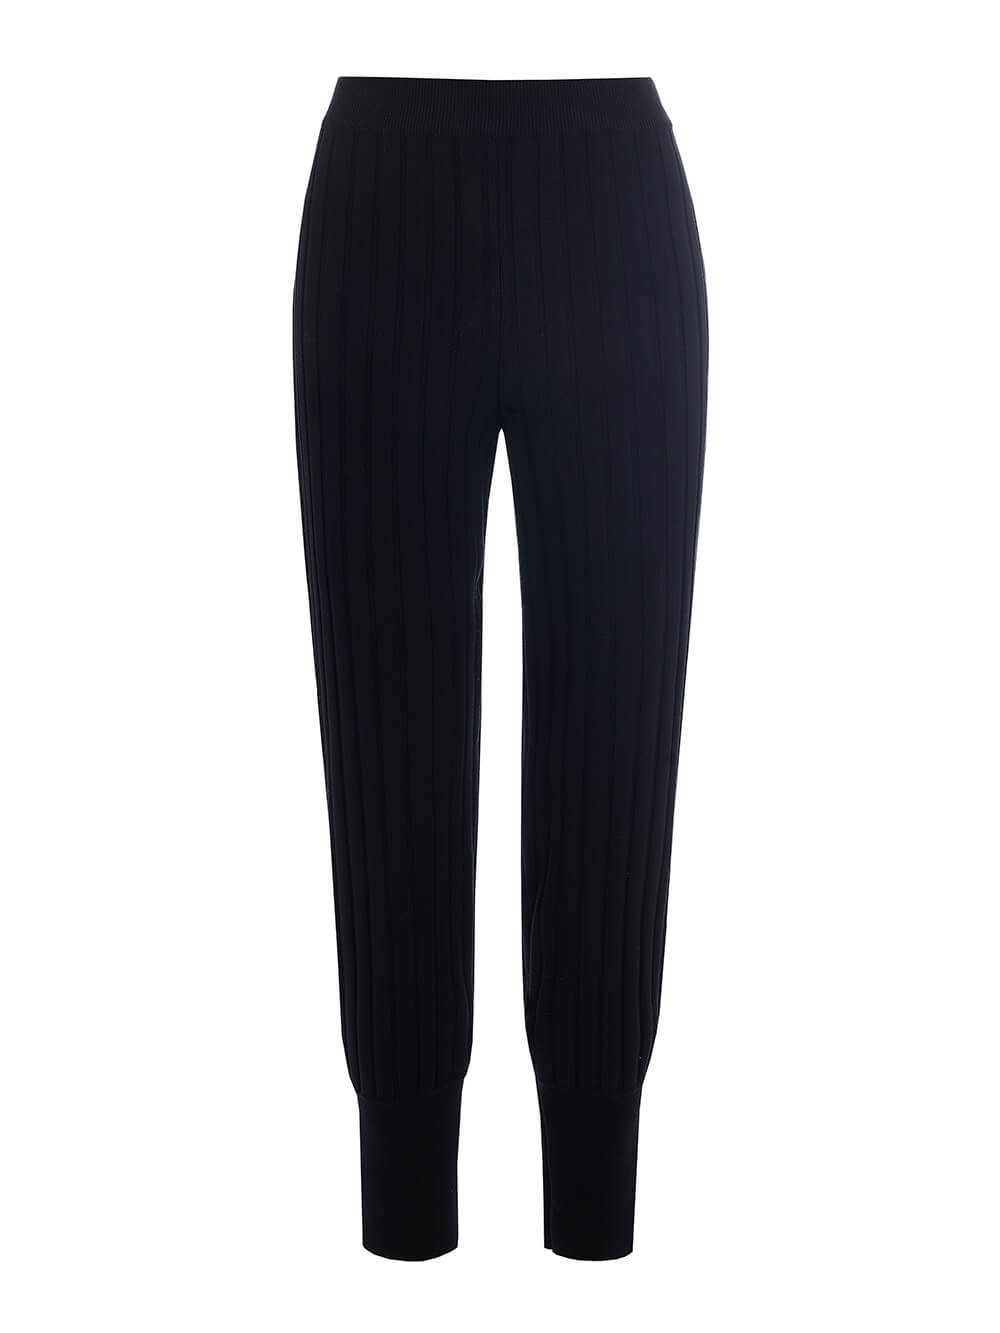 Женские брюки черного цвета из вискозы - фото 1